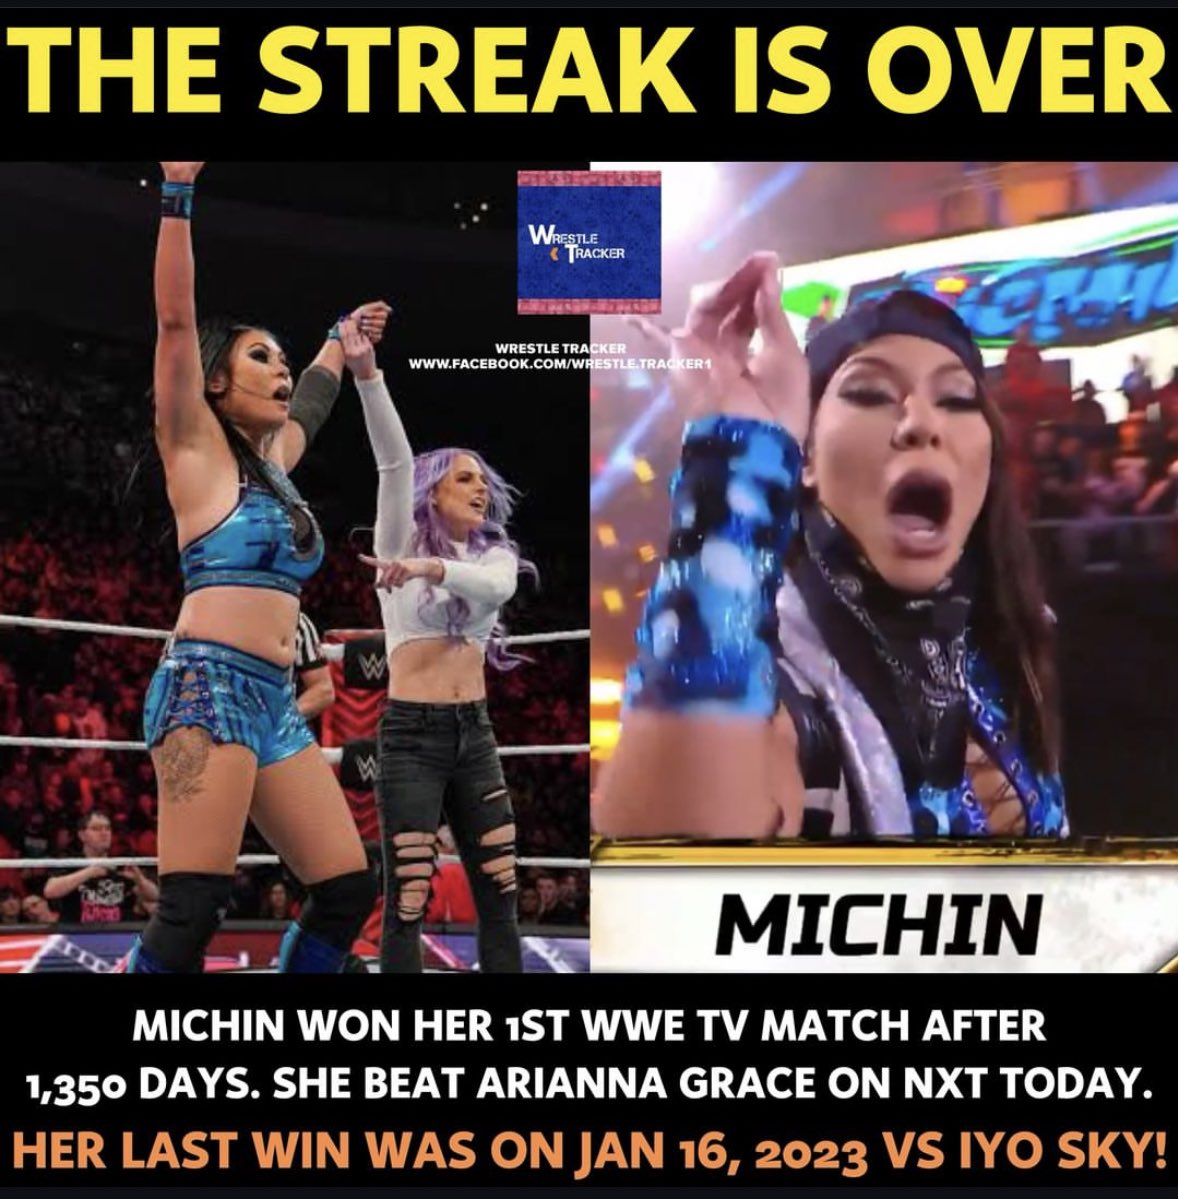 MICHIN finally wins a WWE singles match on TV! #WWE #Michin